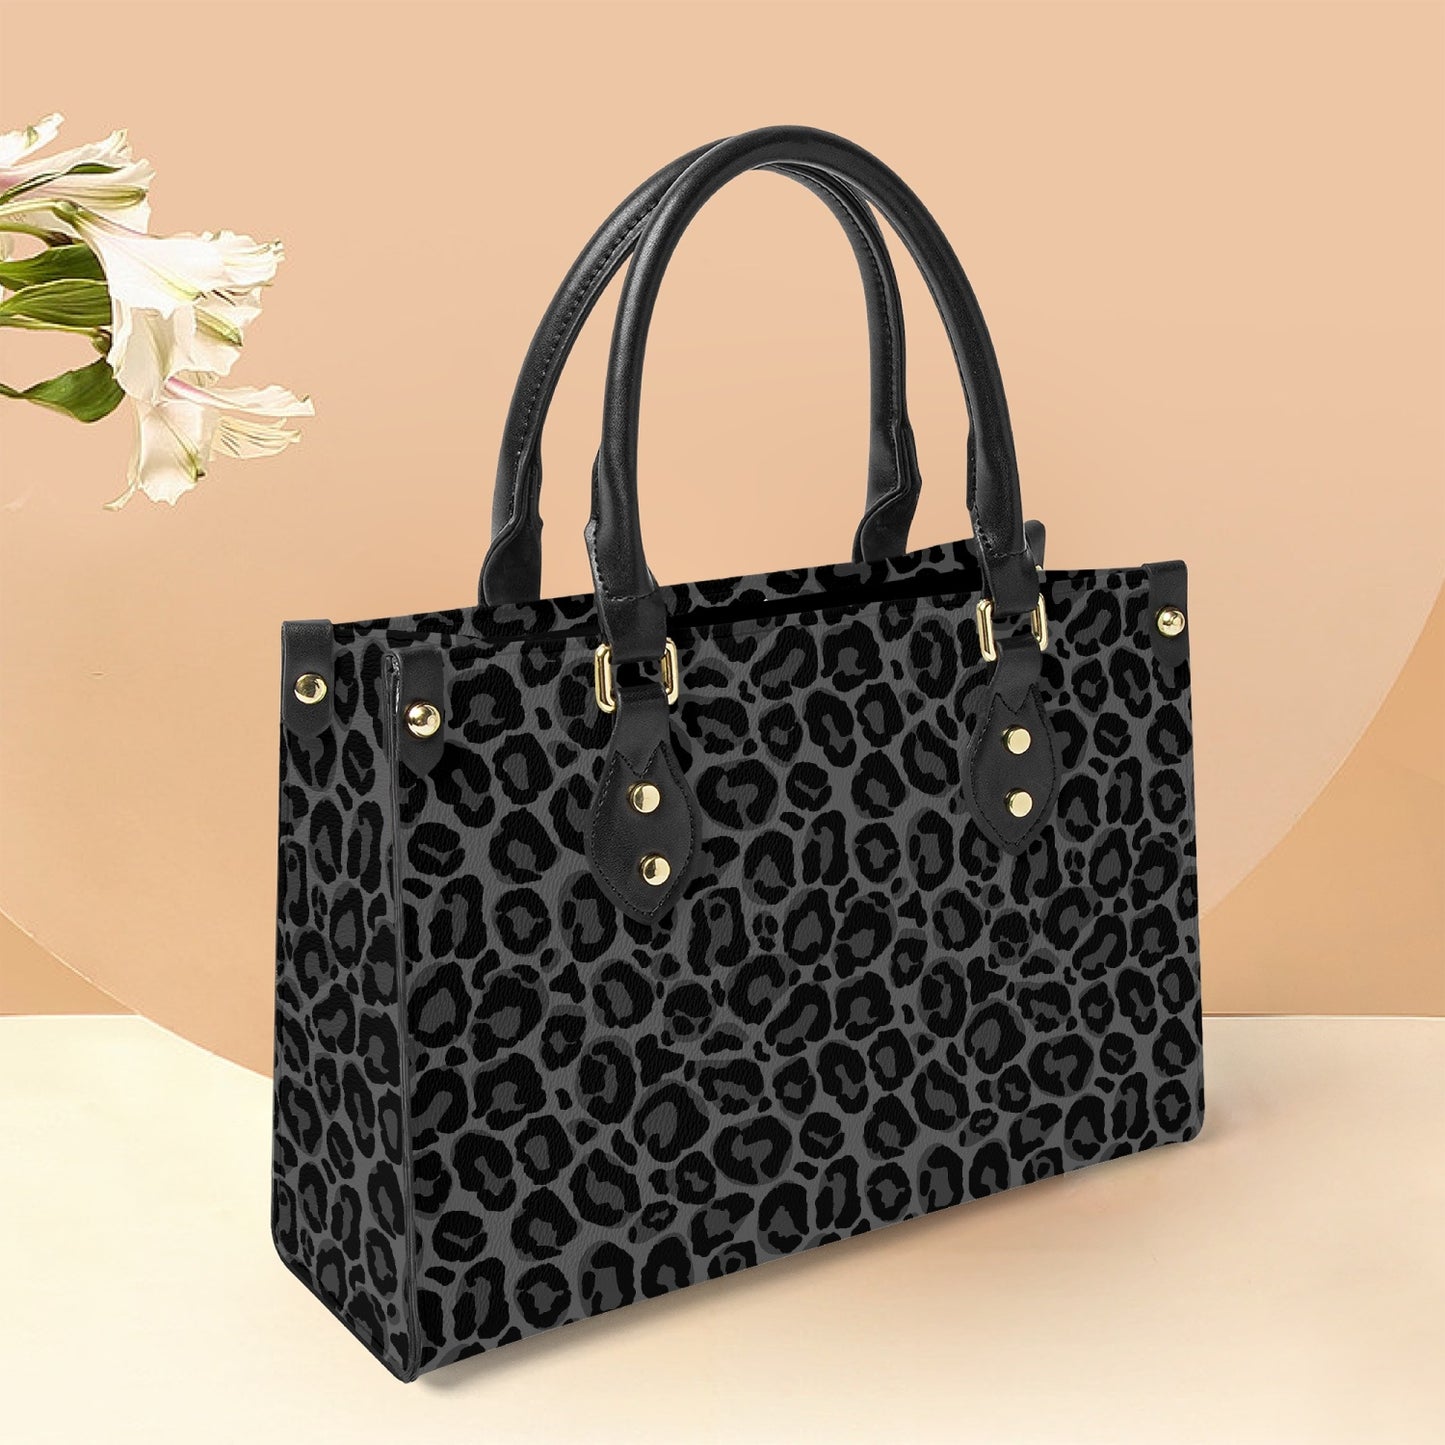 Black Leopard Tote Bag Purse, Cheetah Grey Print Top Handle Handbag Women Vegan Vegan Leather Zip Top Designer Handmade Work Bag